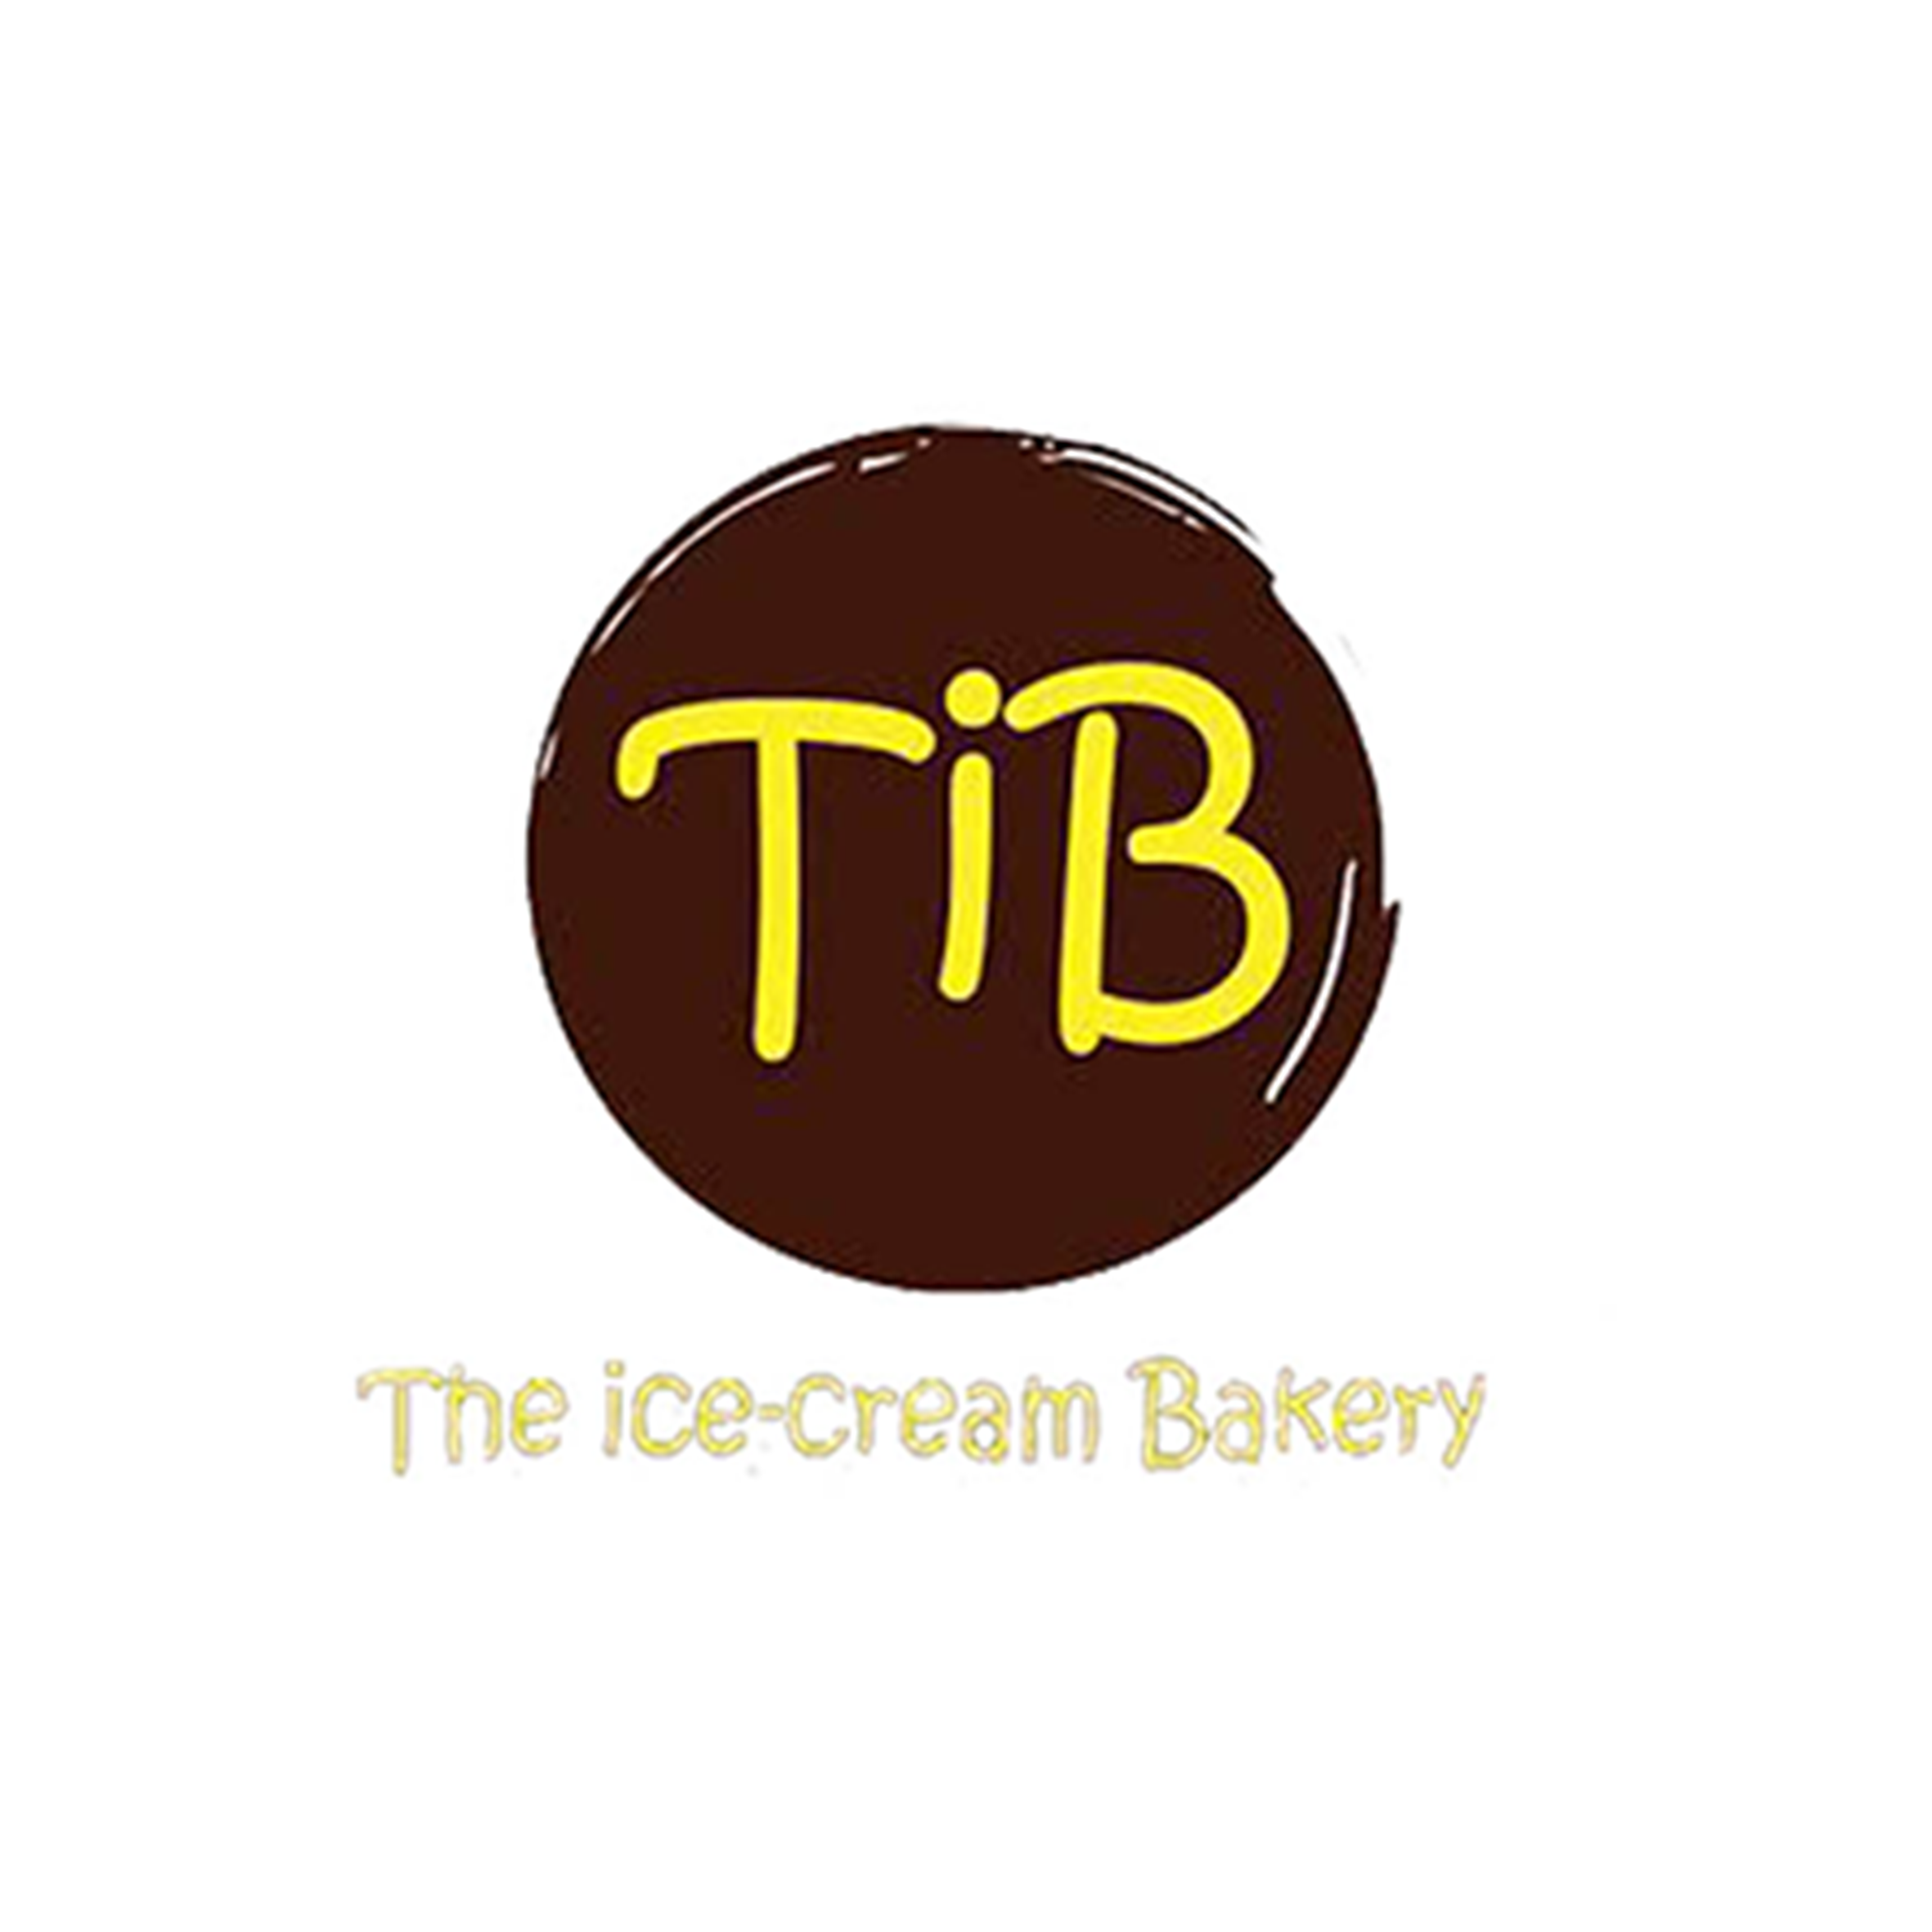 TIB-Logo